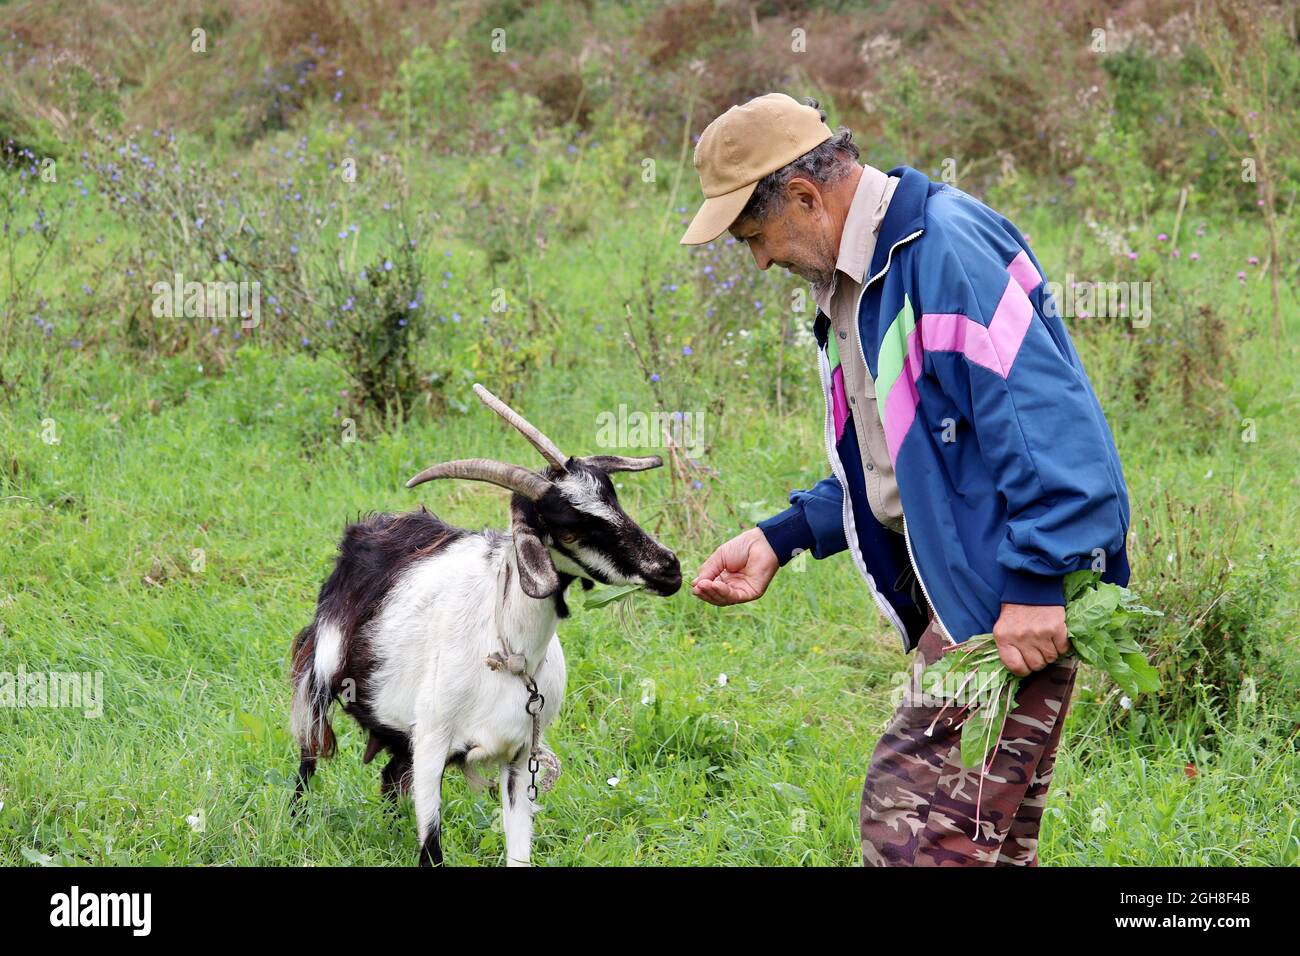 Un vieux fermier nourrit une chèvre avec de l'herbe sur un pâturage vert. Homme âgé en milieu rural, laiterie Banque D'Images